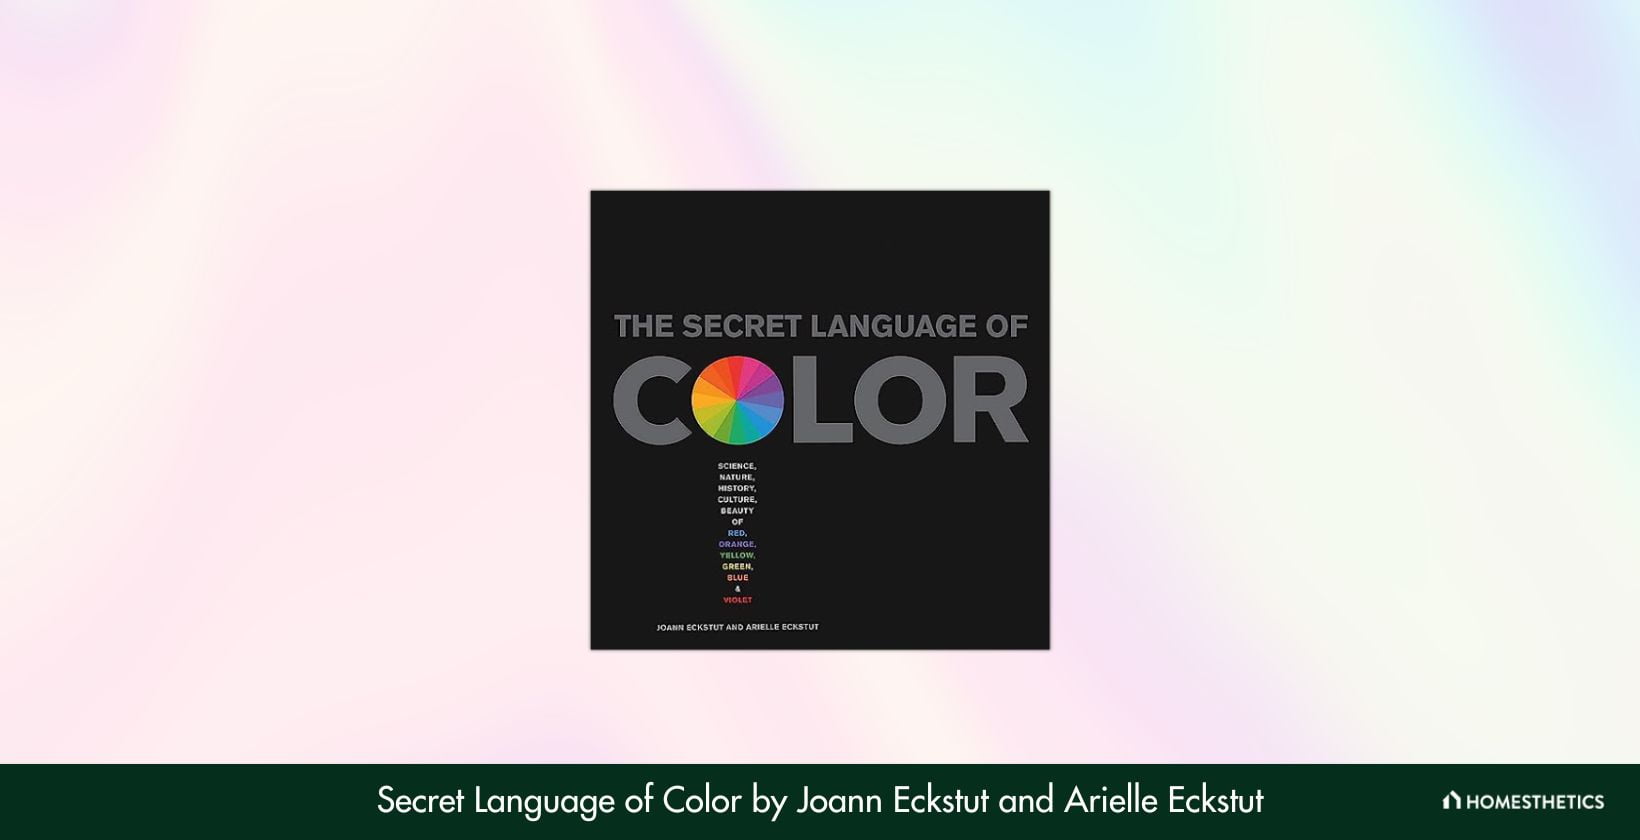 Secret Language of Color by Joann Eckstut and Arielle Eckstut